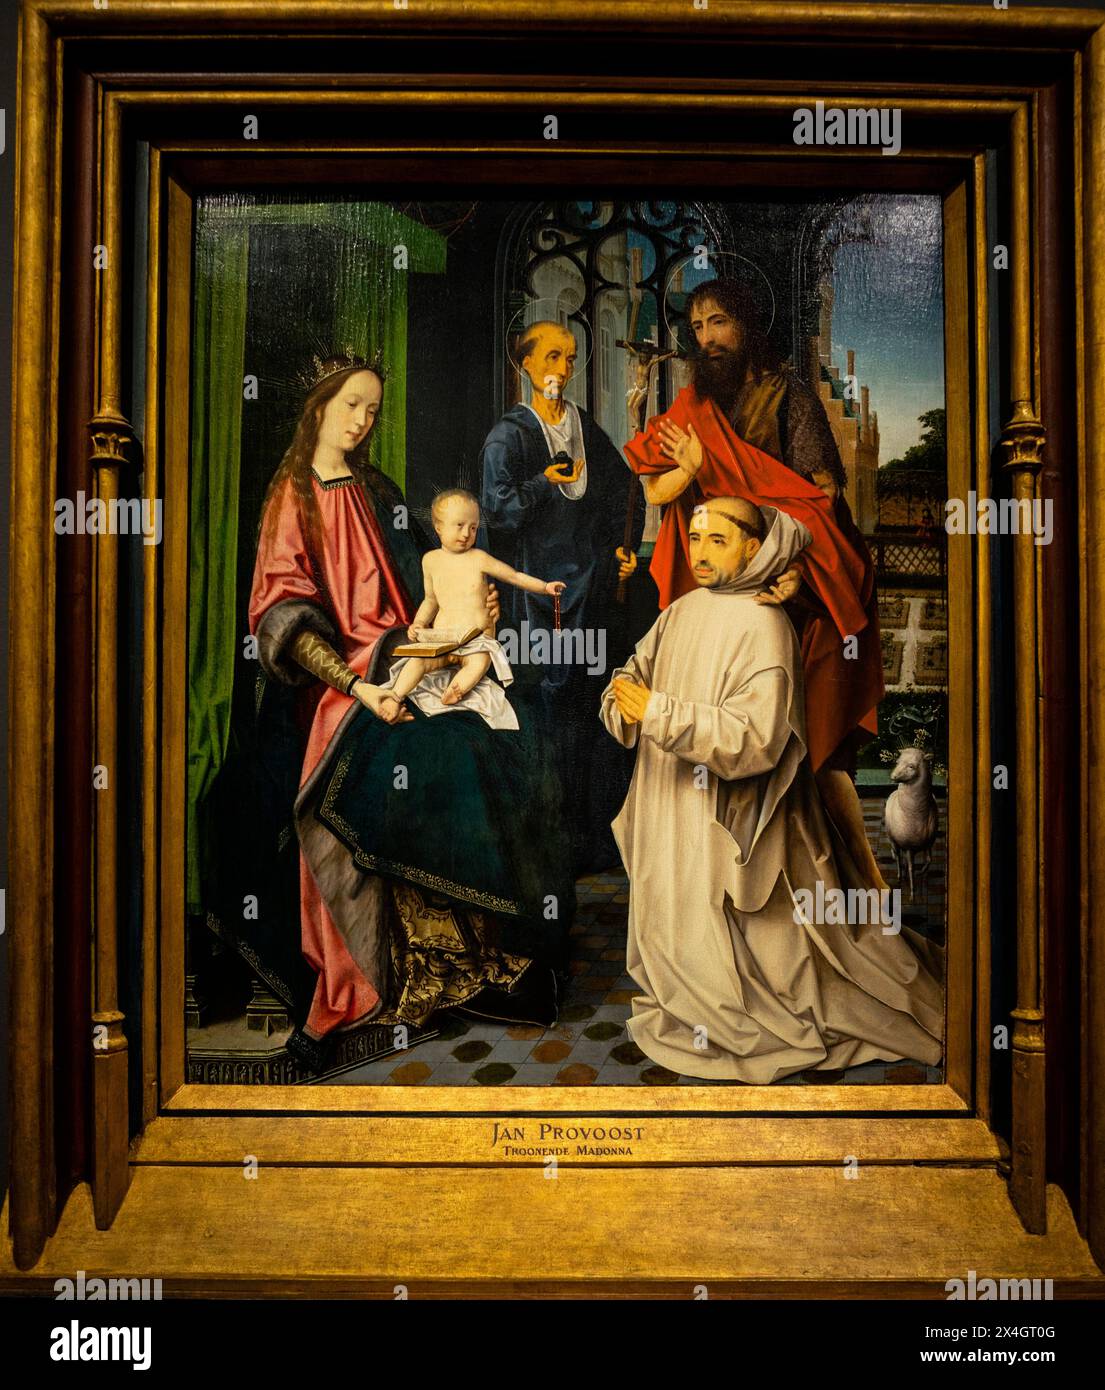 La Vierge à l'enfant intronisé, avec les saints Jérôme et Jean-Baptiste et un moine chartreux, Jan Provoost, Rijksmuseum, Amsterdam, pays-Bas. Banque D'Images